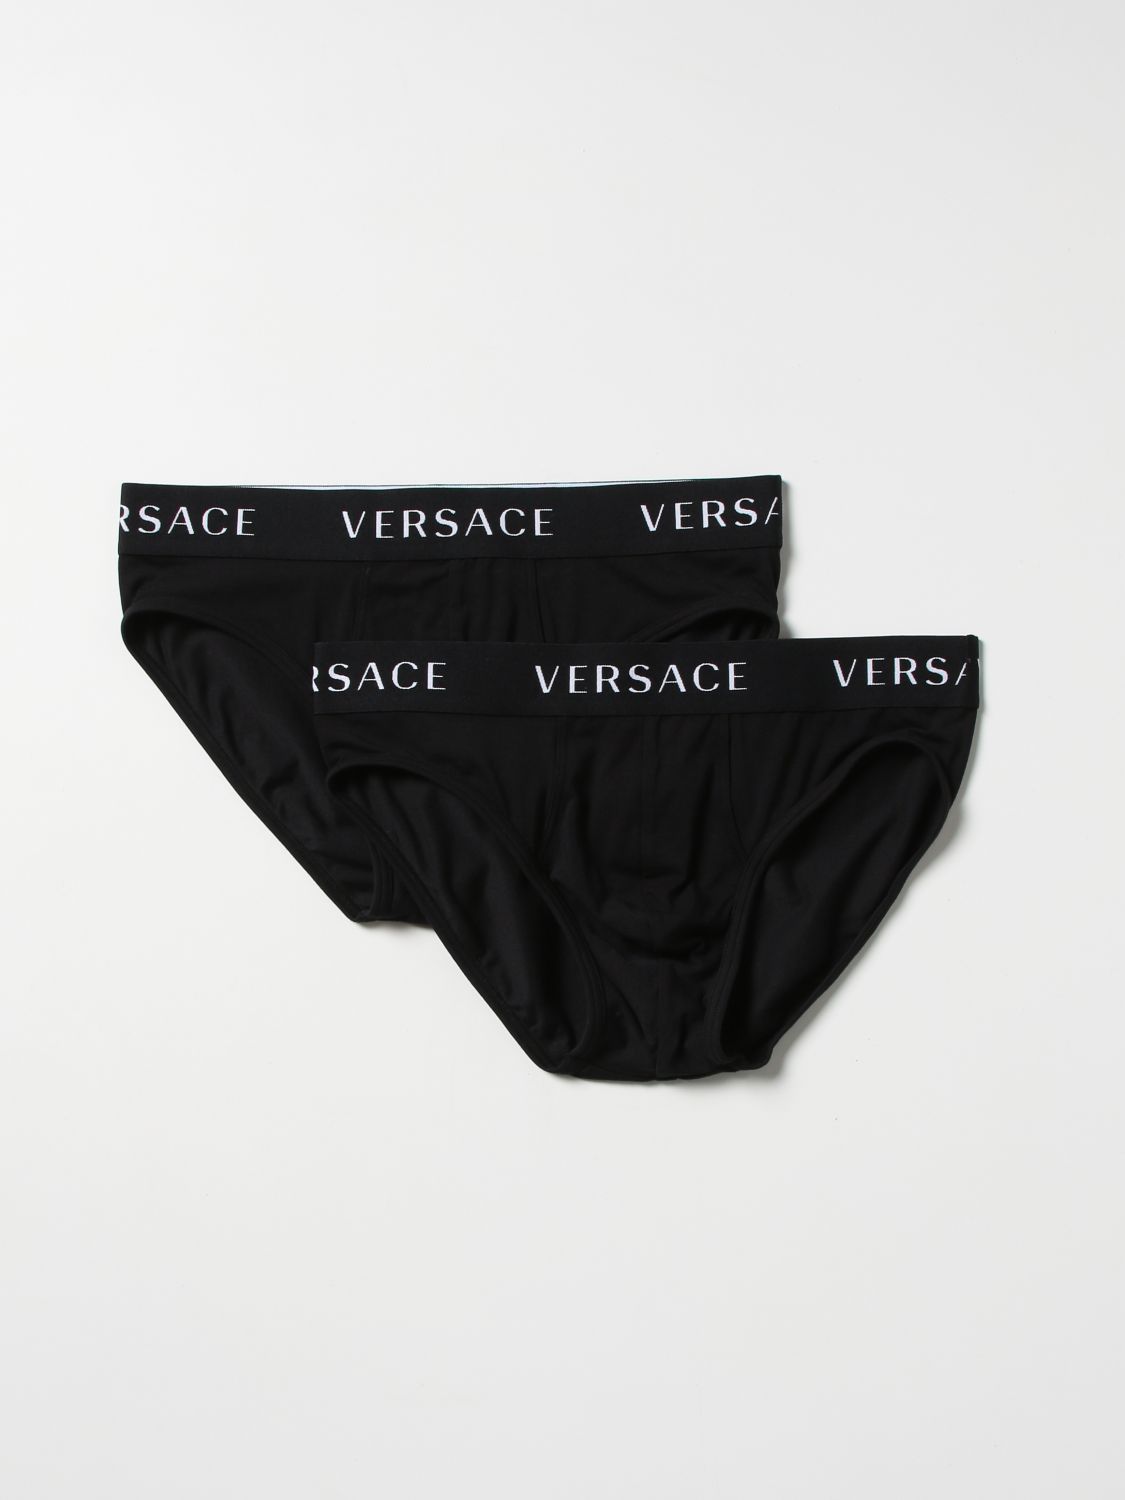 アンダーウェア ヴェルサーチェ: アンダーウェア Versace メンズ ブラック 1